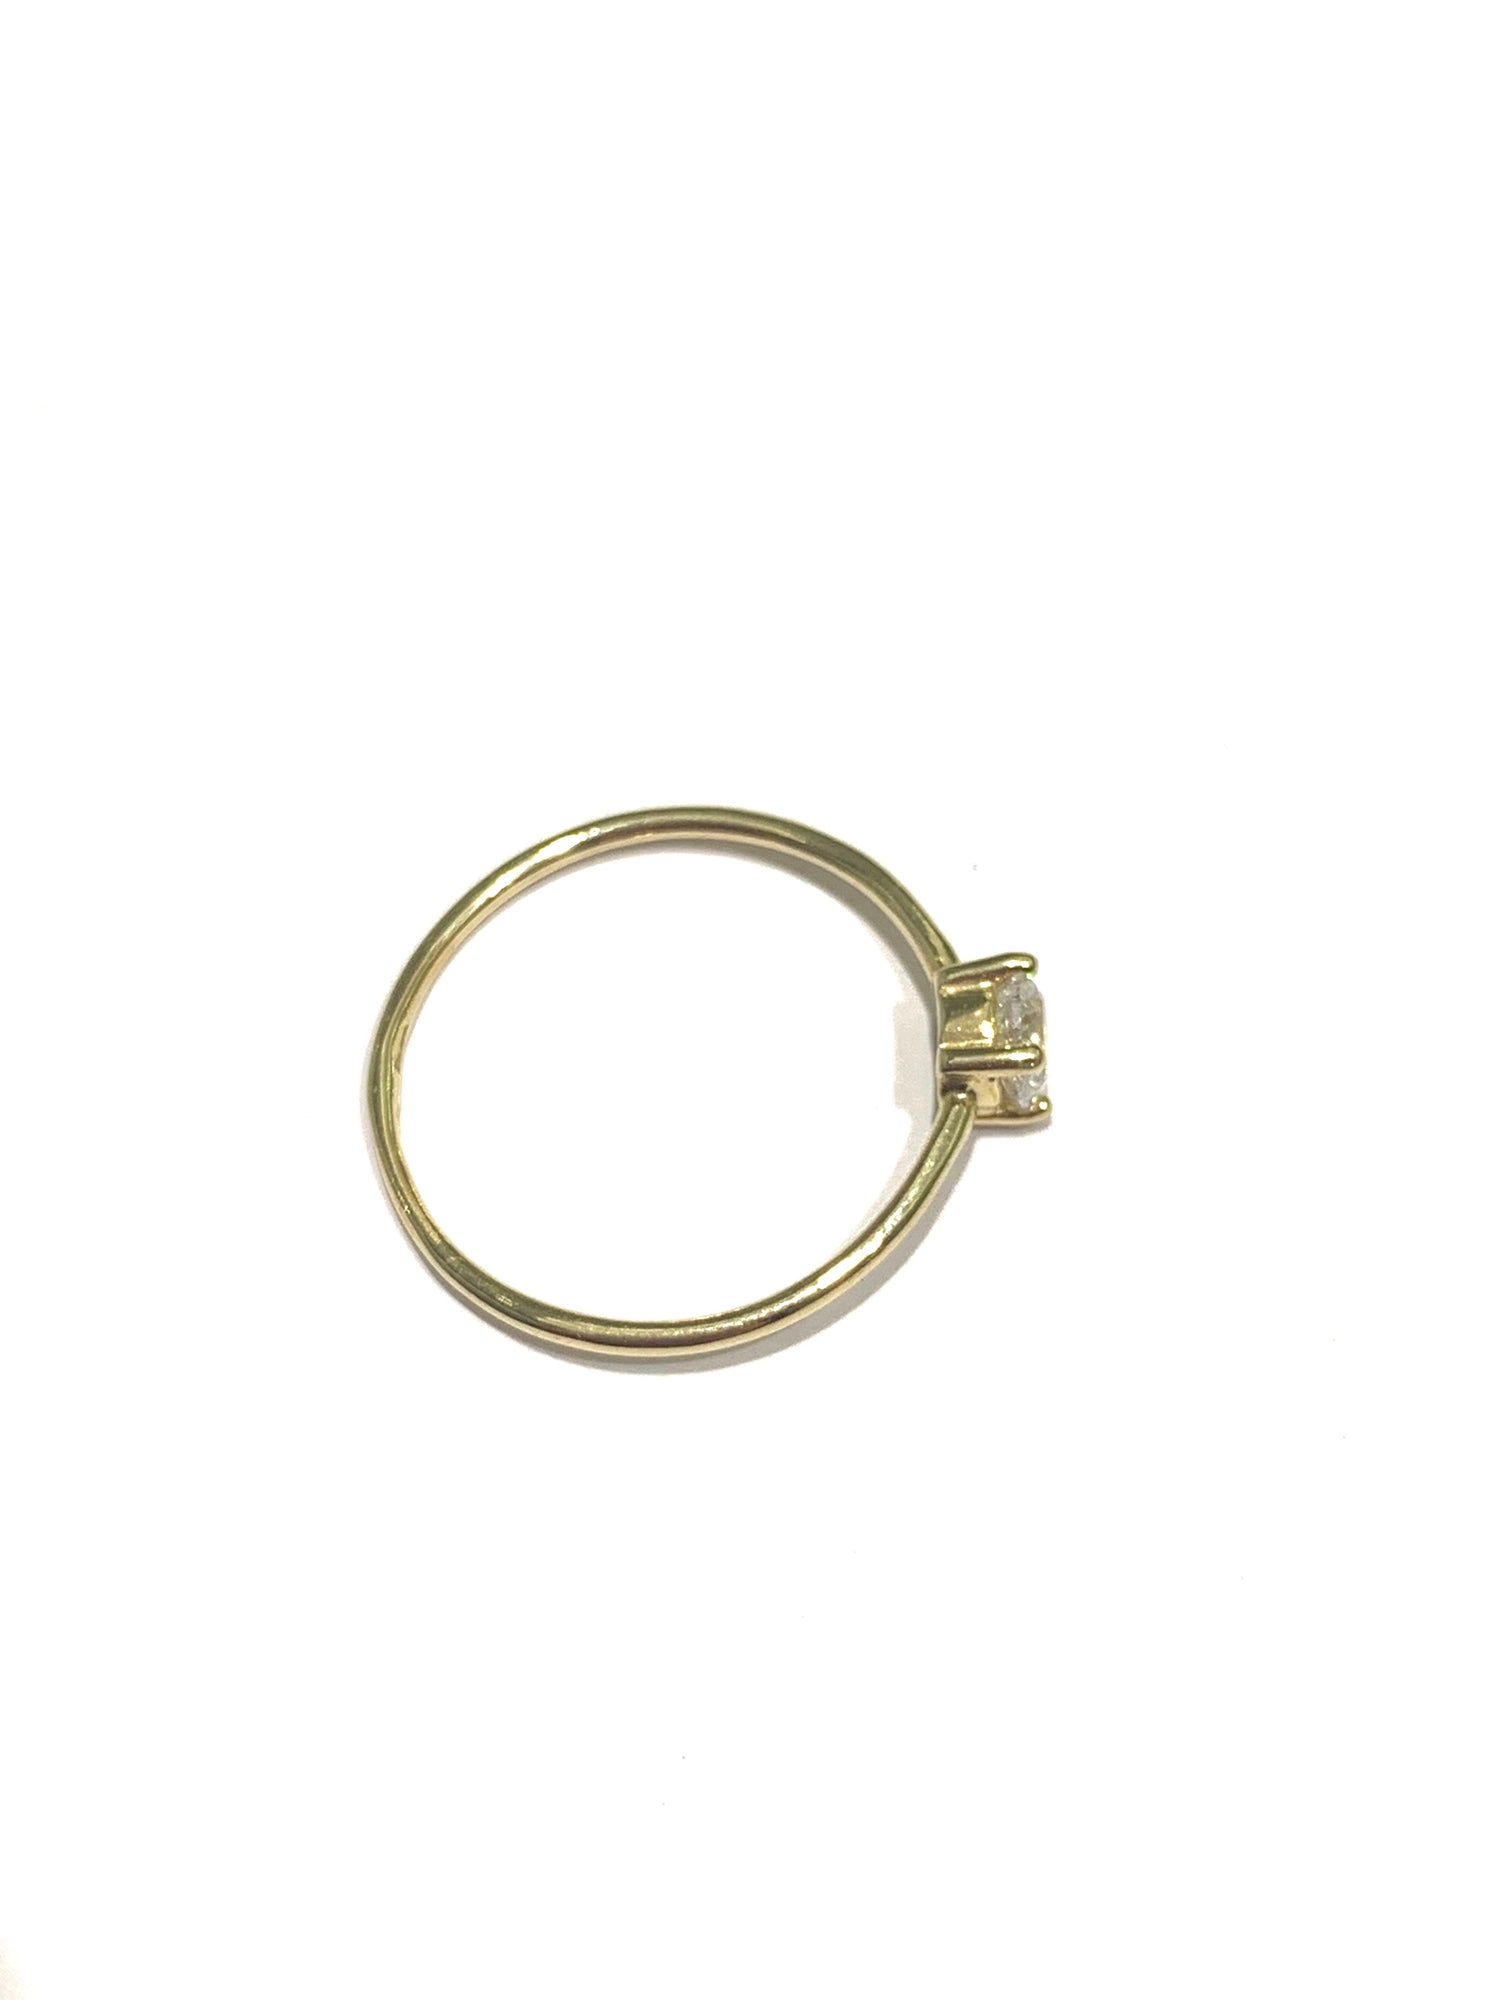 Anello in oro giallo 9kt con gambo sottile e zircone solitario.  Dimensione zircone 0,4 cm.  Misura 15.